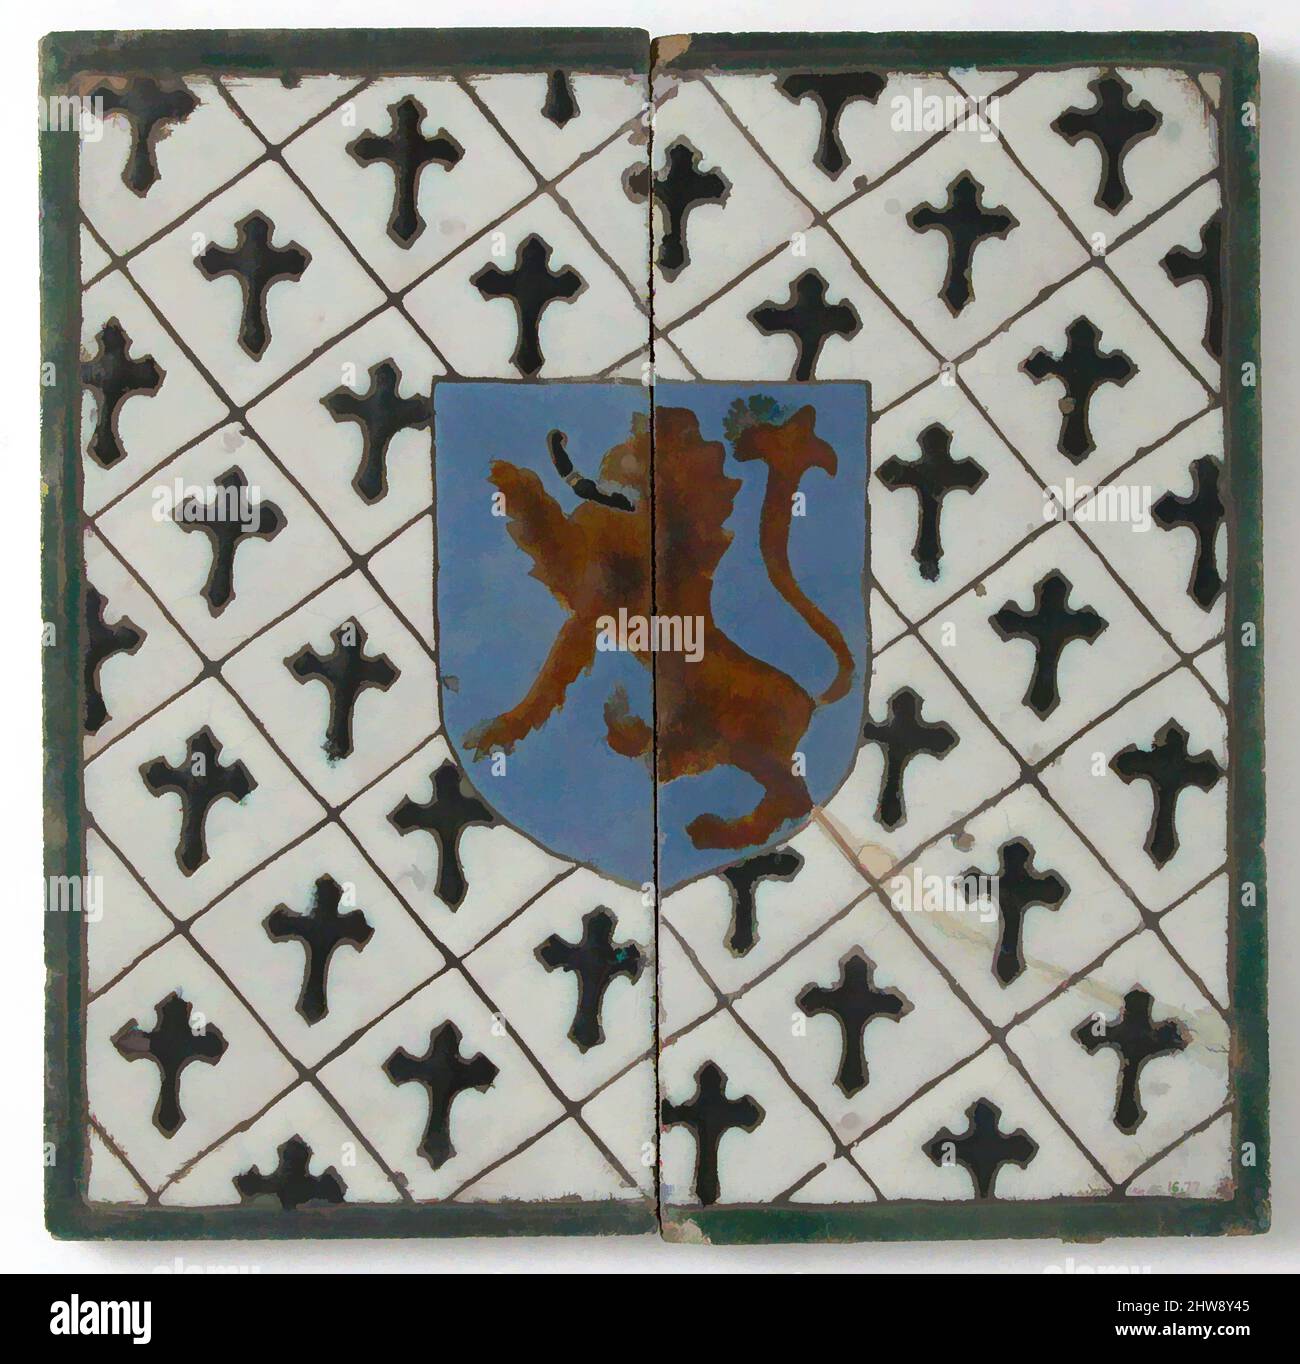 Kunst inspiriert von Fliesen mit einem Löwen auf einem Schild, Ende 1400s oder Anfang 1500s, hergestellt in Sevilla, Spanien, Spanisch, Zinn-glasierte Steinwaren (cuerda seca-Technik), insgesamt: 11 1/8 x 5 9/16 x 5/8 Zoll (28,3 x 14,1 x 1,6 cm), Keramik-Fliesen, Klassisches von Artotop modernisiertes Werk mit einem Schuss Modernität. Formen, Farbe und Wert, auffällige visuelle Wirkung auf Kunst. Emotionen durch Freiheit von Kunstwerken auf zeitgemäße Weise. Eine zeitlose Botschaft, die eine wild kreative neue Richtung verfolgt. Künstler, die sich dem digitalen Medium zuwenden und die Artotop NFT erschaffen Stockfoto